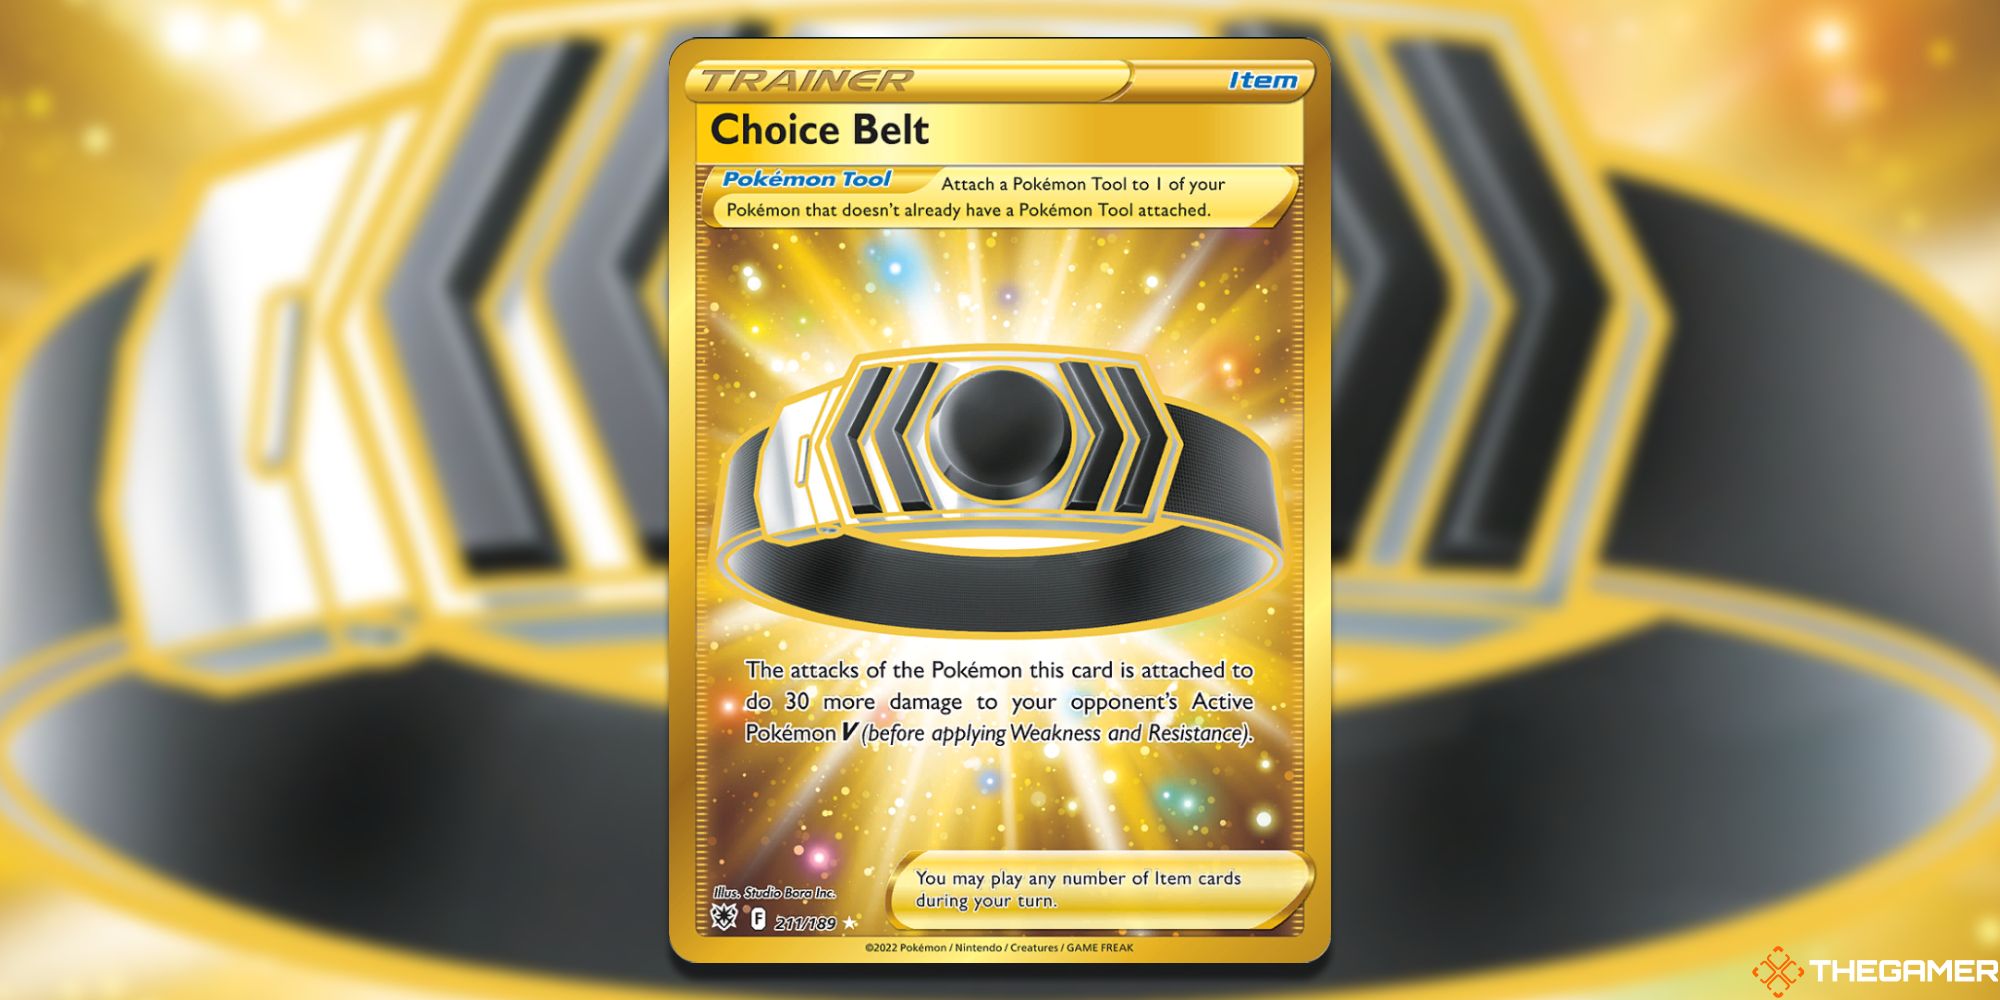 Choice Belt Pokémon TCG Card (1)